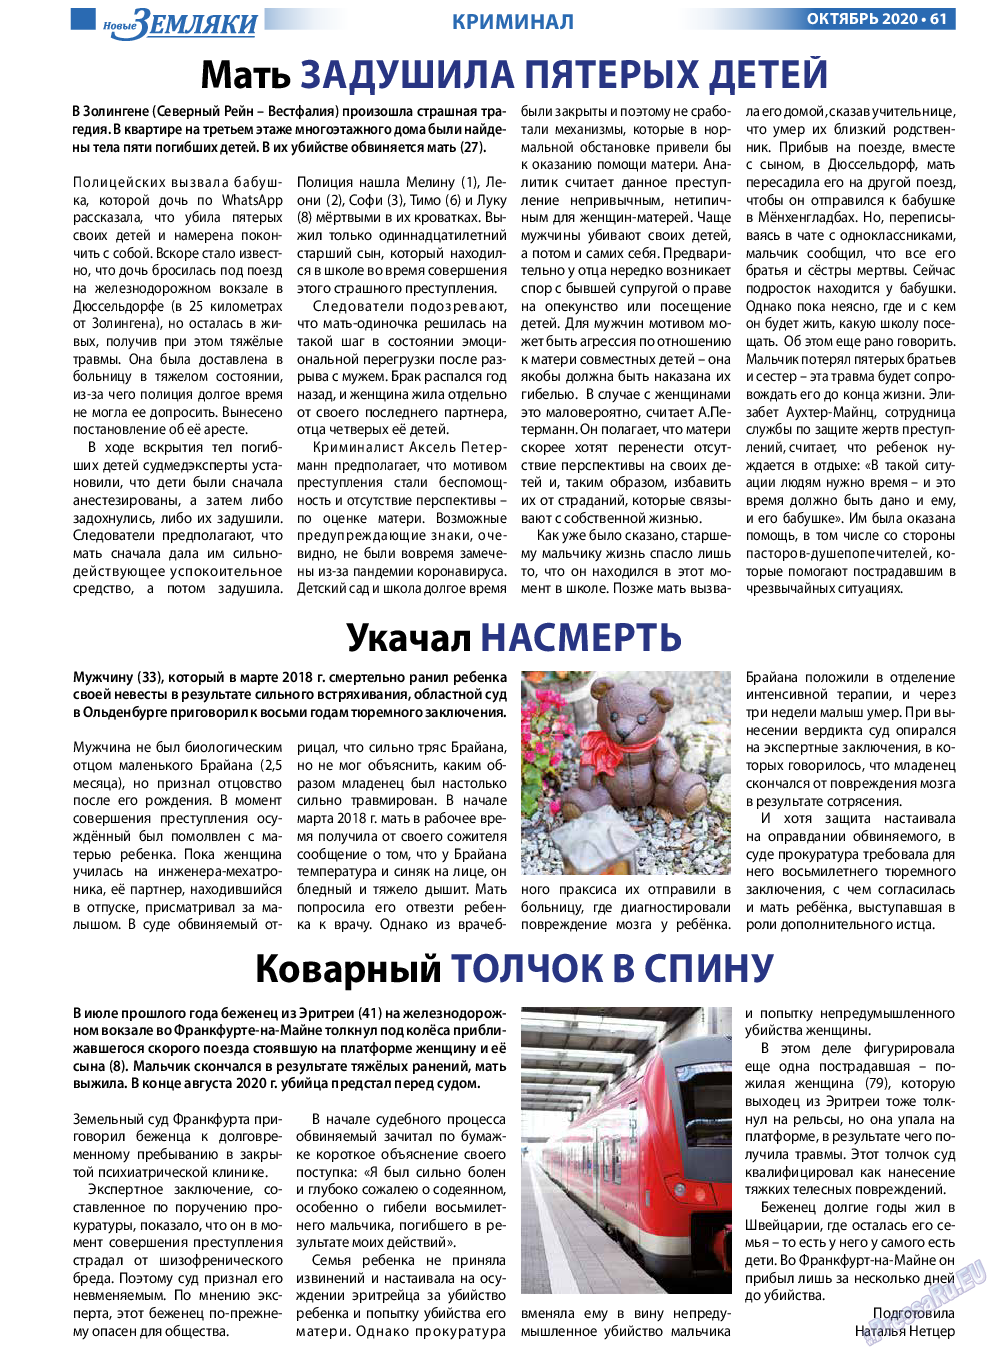 Новые Земляки, газета. 2020 №10 стр.61